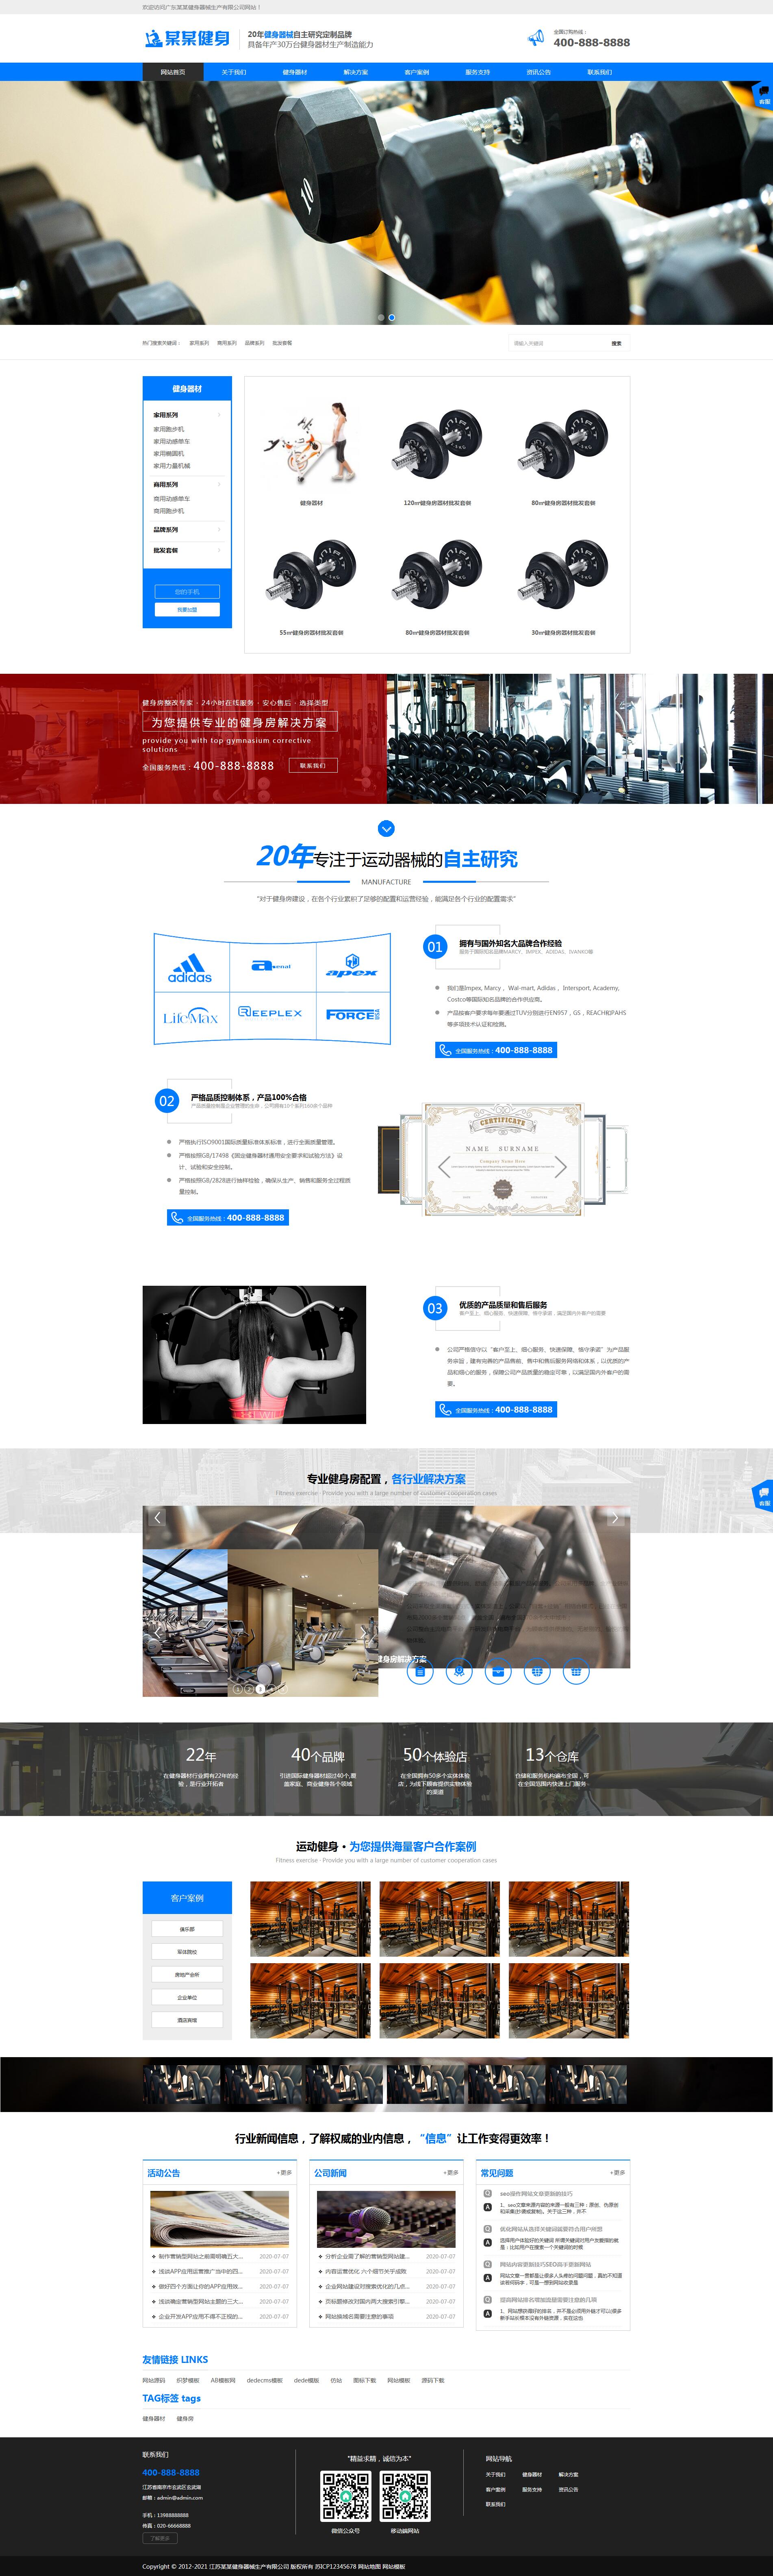 织梦内核蓝色响应式营销型运动健身器械器材企业网站模板 自适应手机-下载群